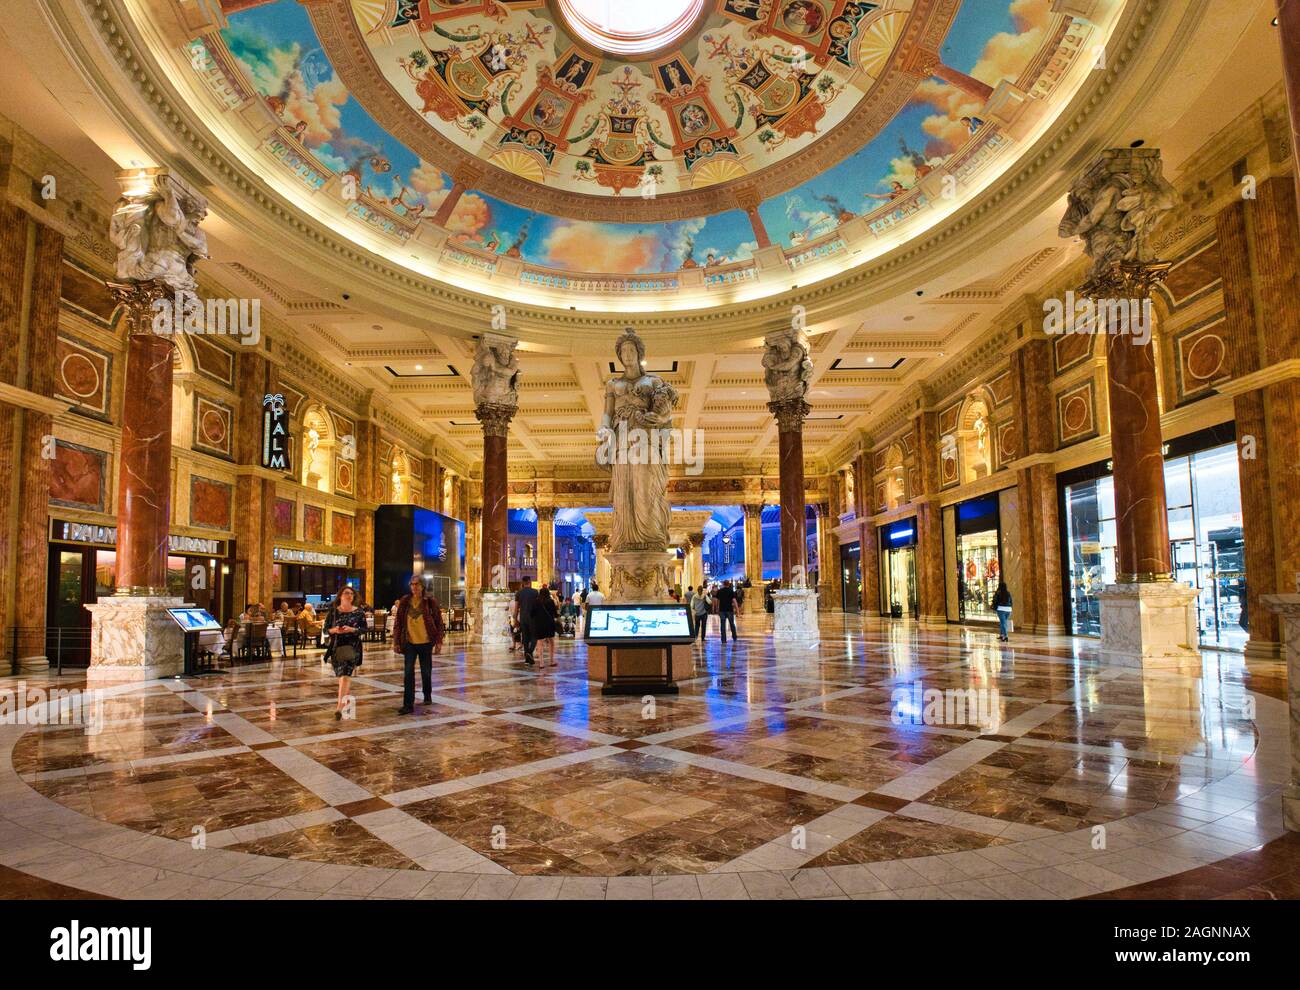 Statue e decorazioni decorate all'interno del centro commerciale di lusso Forum Shops al Caesars Palace, Las Vegas, Nevada, USA Foto Stock